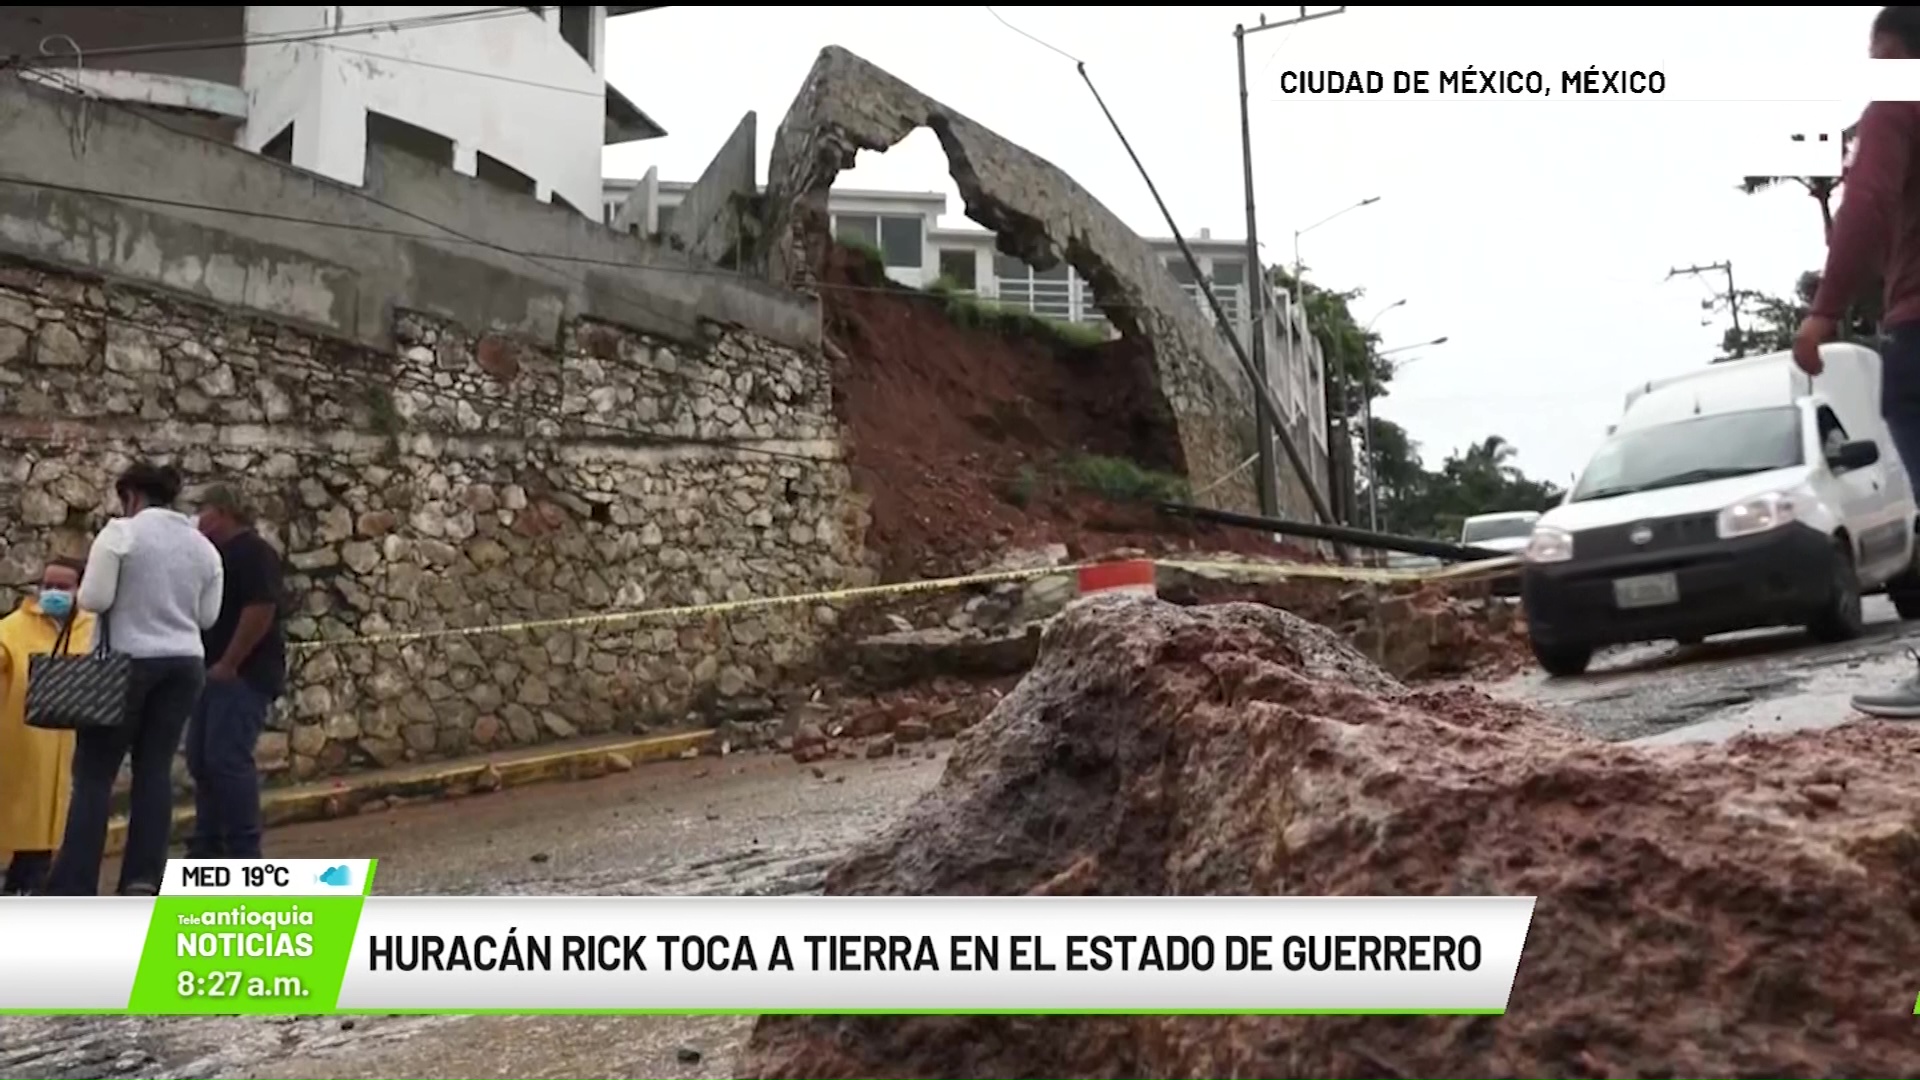 Internacional: Huracán Rick toca a tierra en el Estado de Guerrero